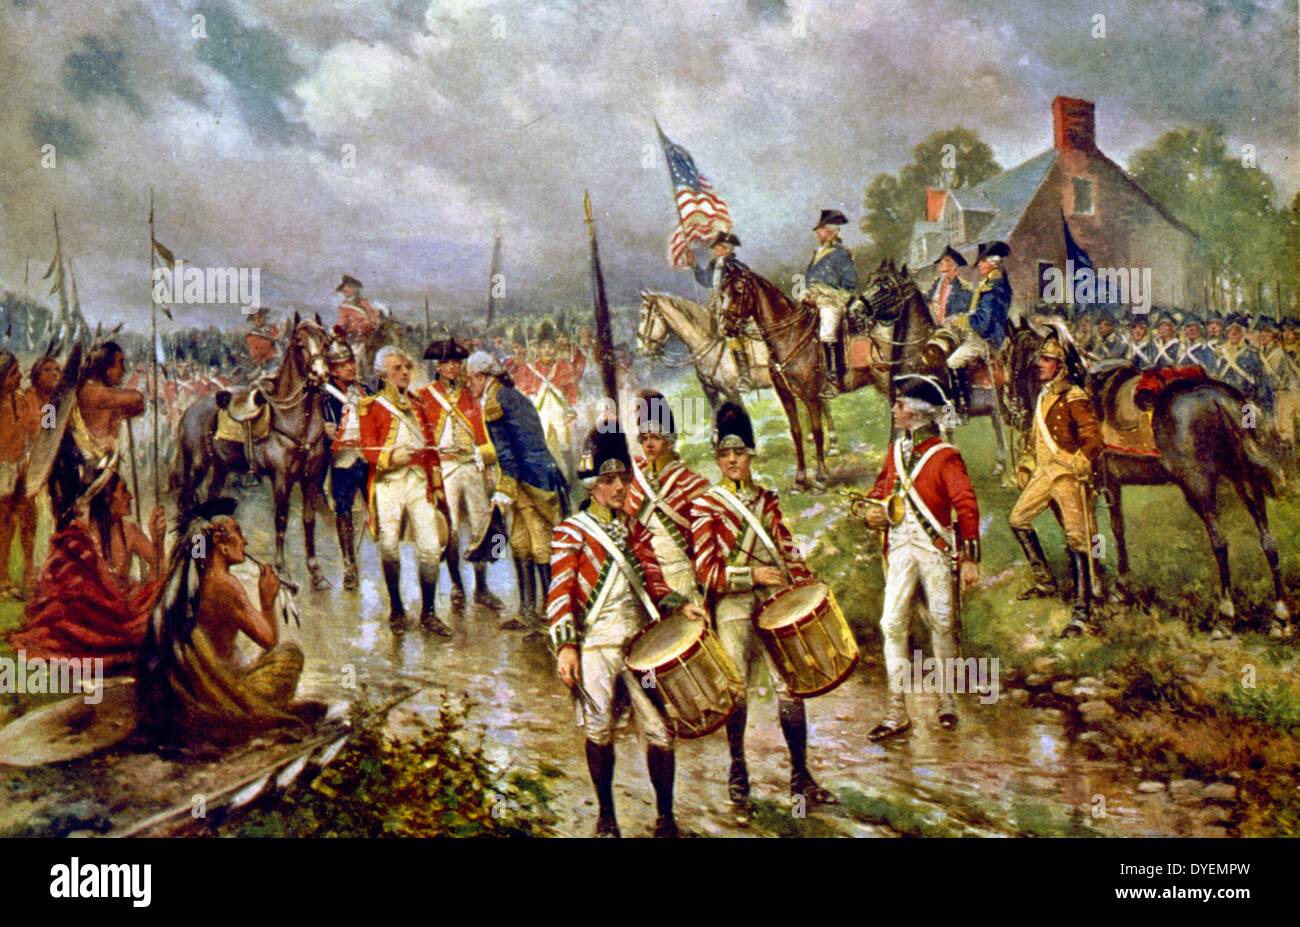 La reddition du général BURGOYNE à Saratoga, pendant la Révolution américaine Banque D'Images